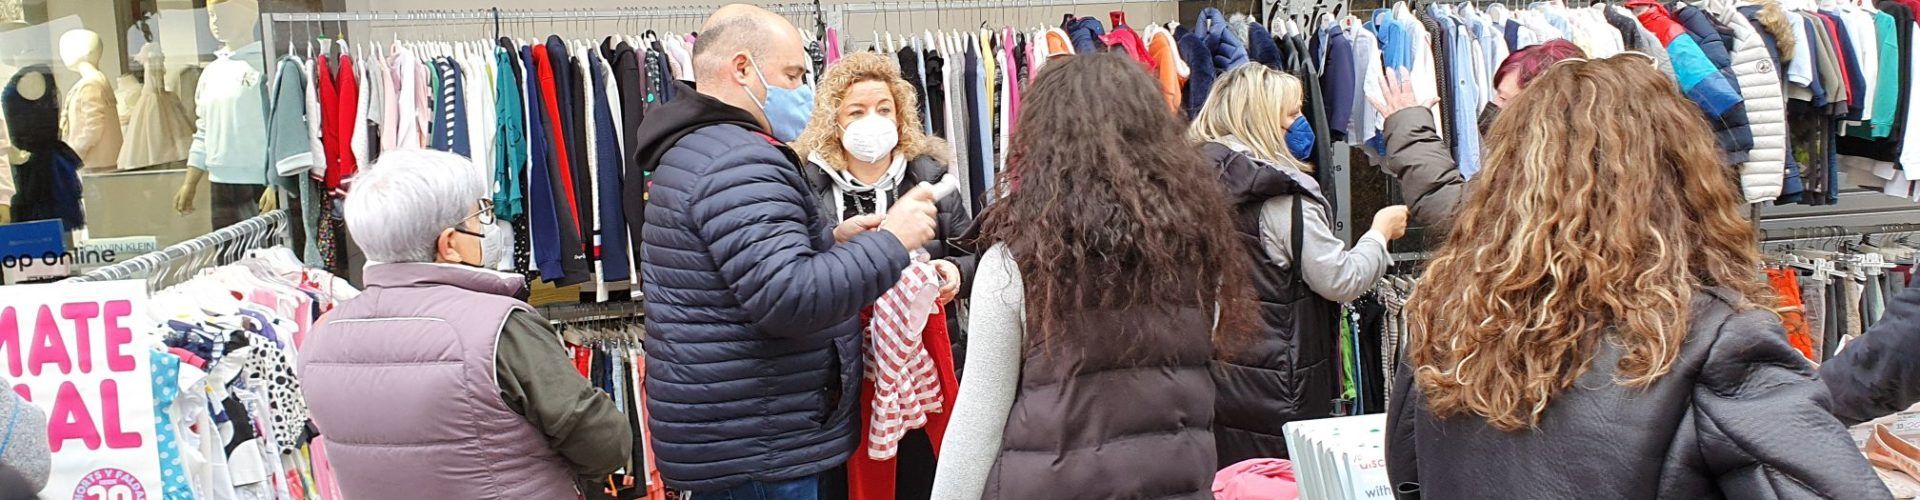 Vídeos i fotos: Botigues al carrer a Vinaròs